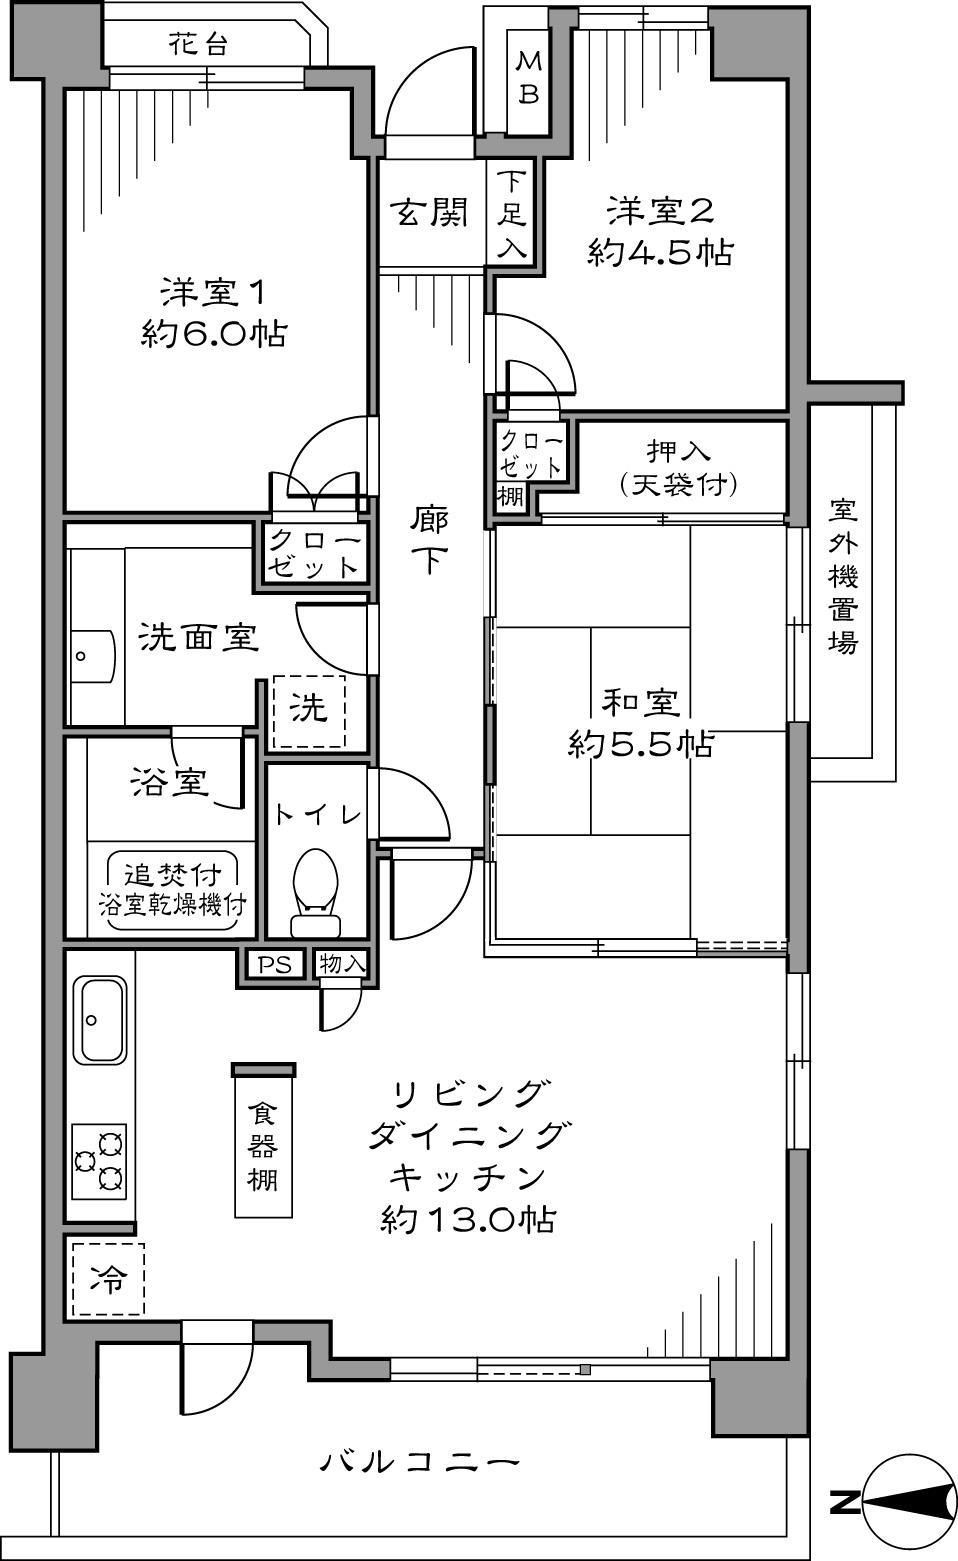 Floor plan. 3LDK, Price 32,800,000 yen, Footprint 65.66m2, Balcony area 9.73m2